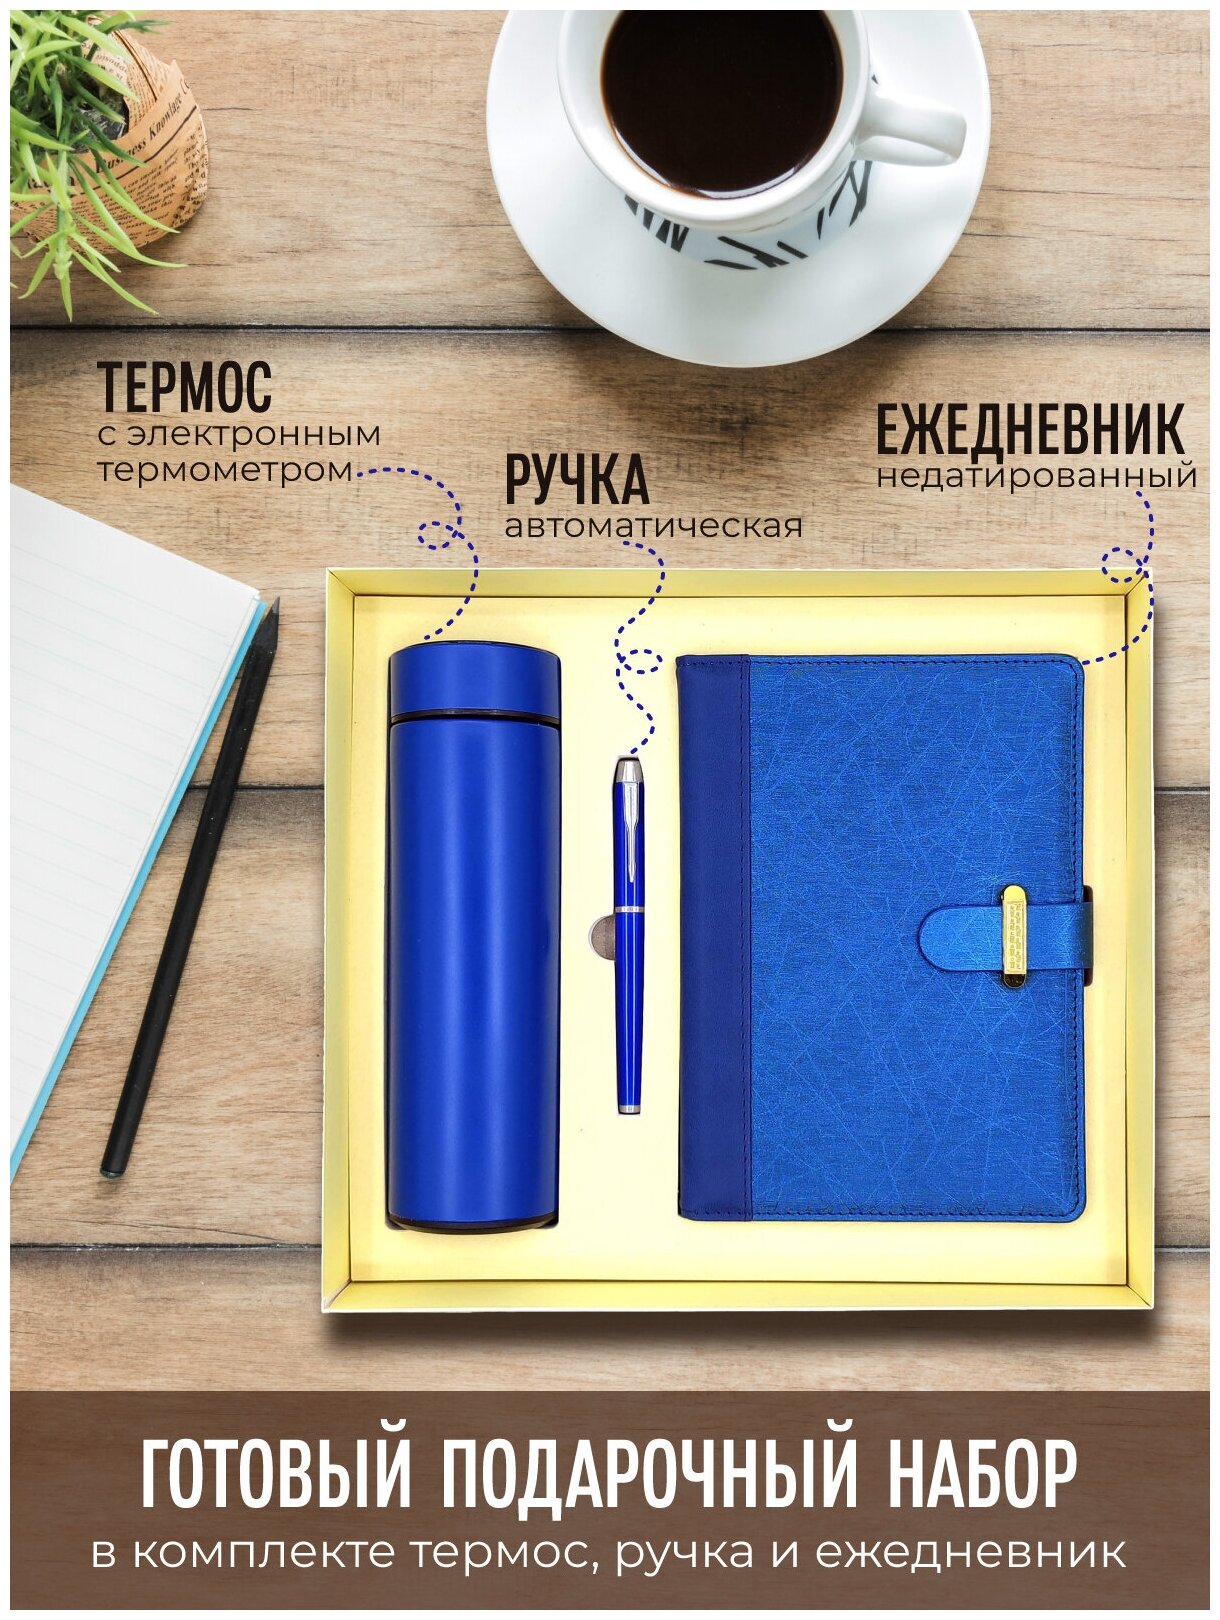 Подарочный набор термос с электронным термометром + ежедневник + ручка цвет синий